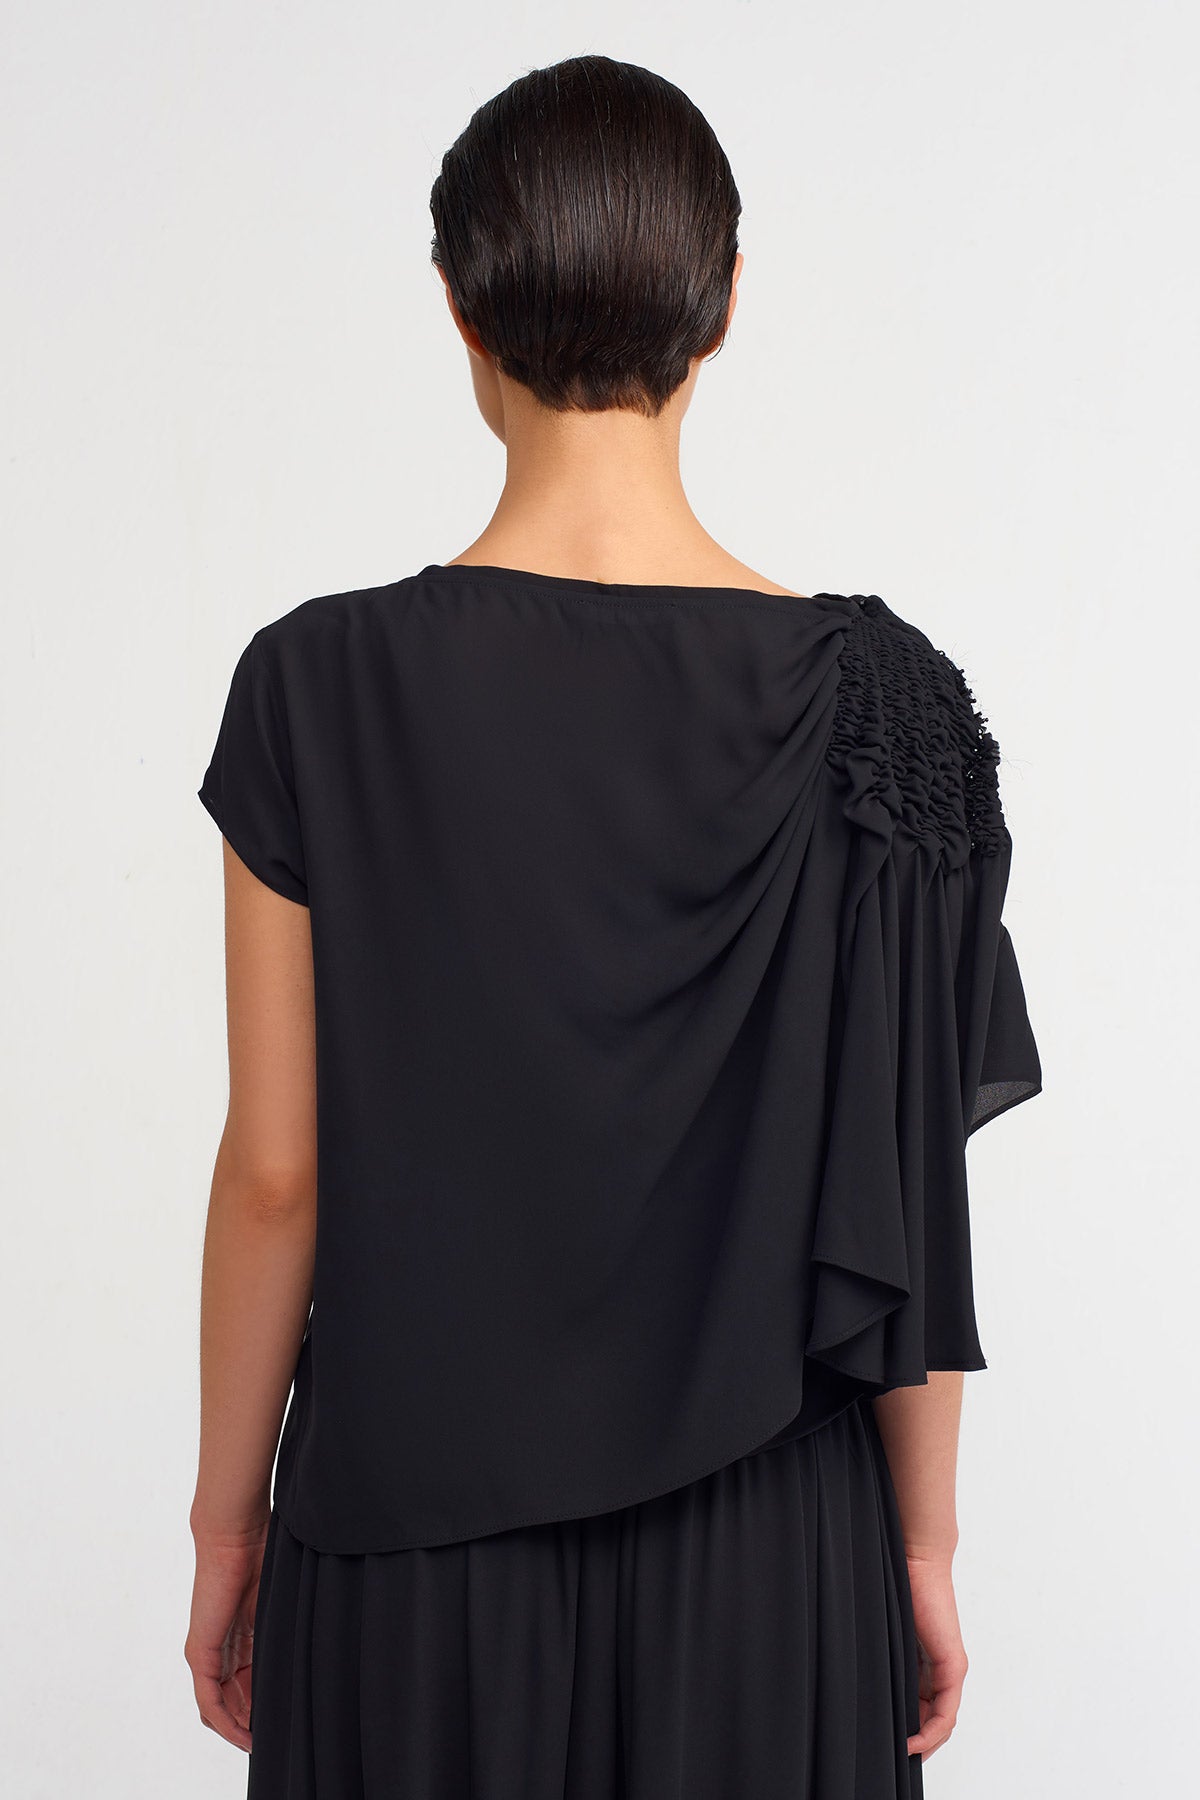 Black Elastic Gathered Sleeve Stylish Blouse -K231011111